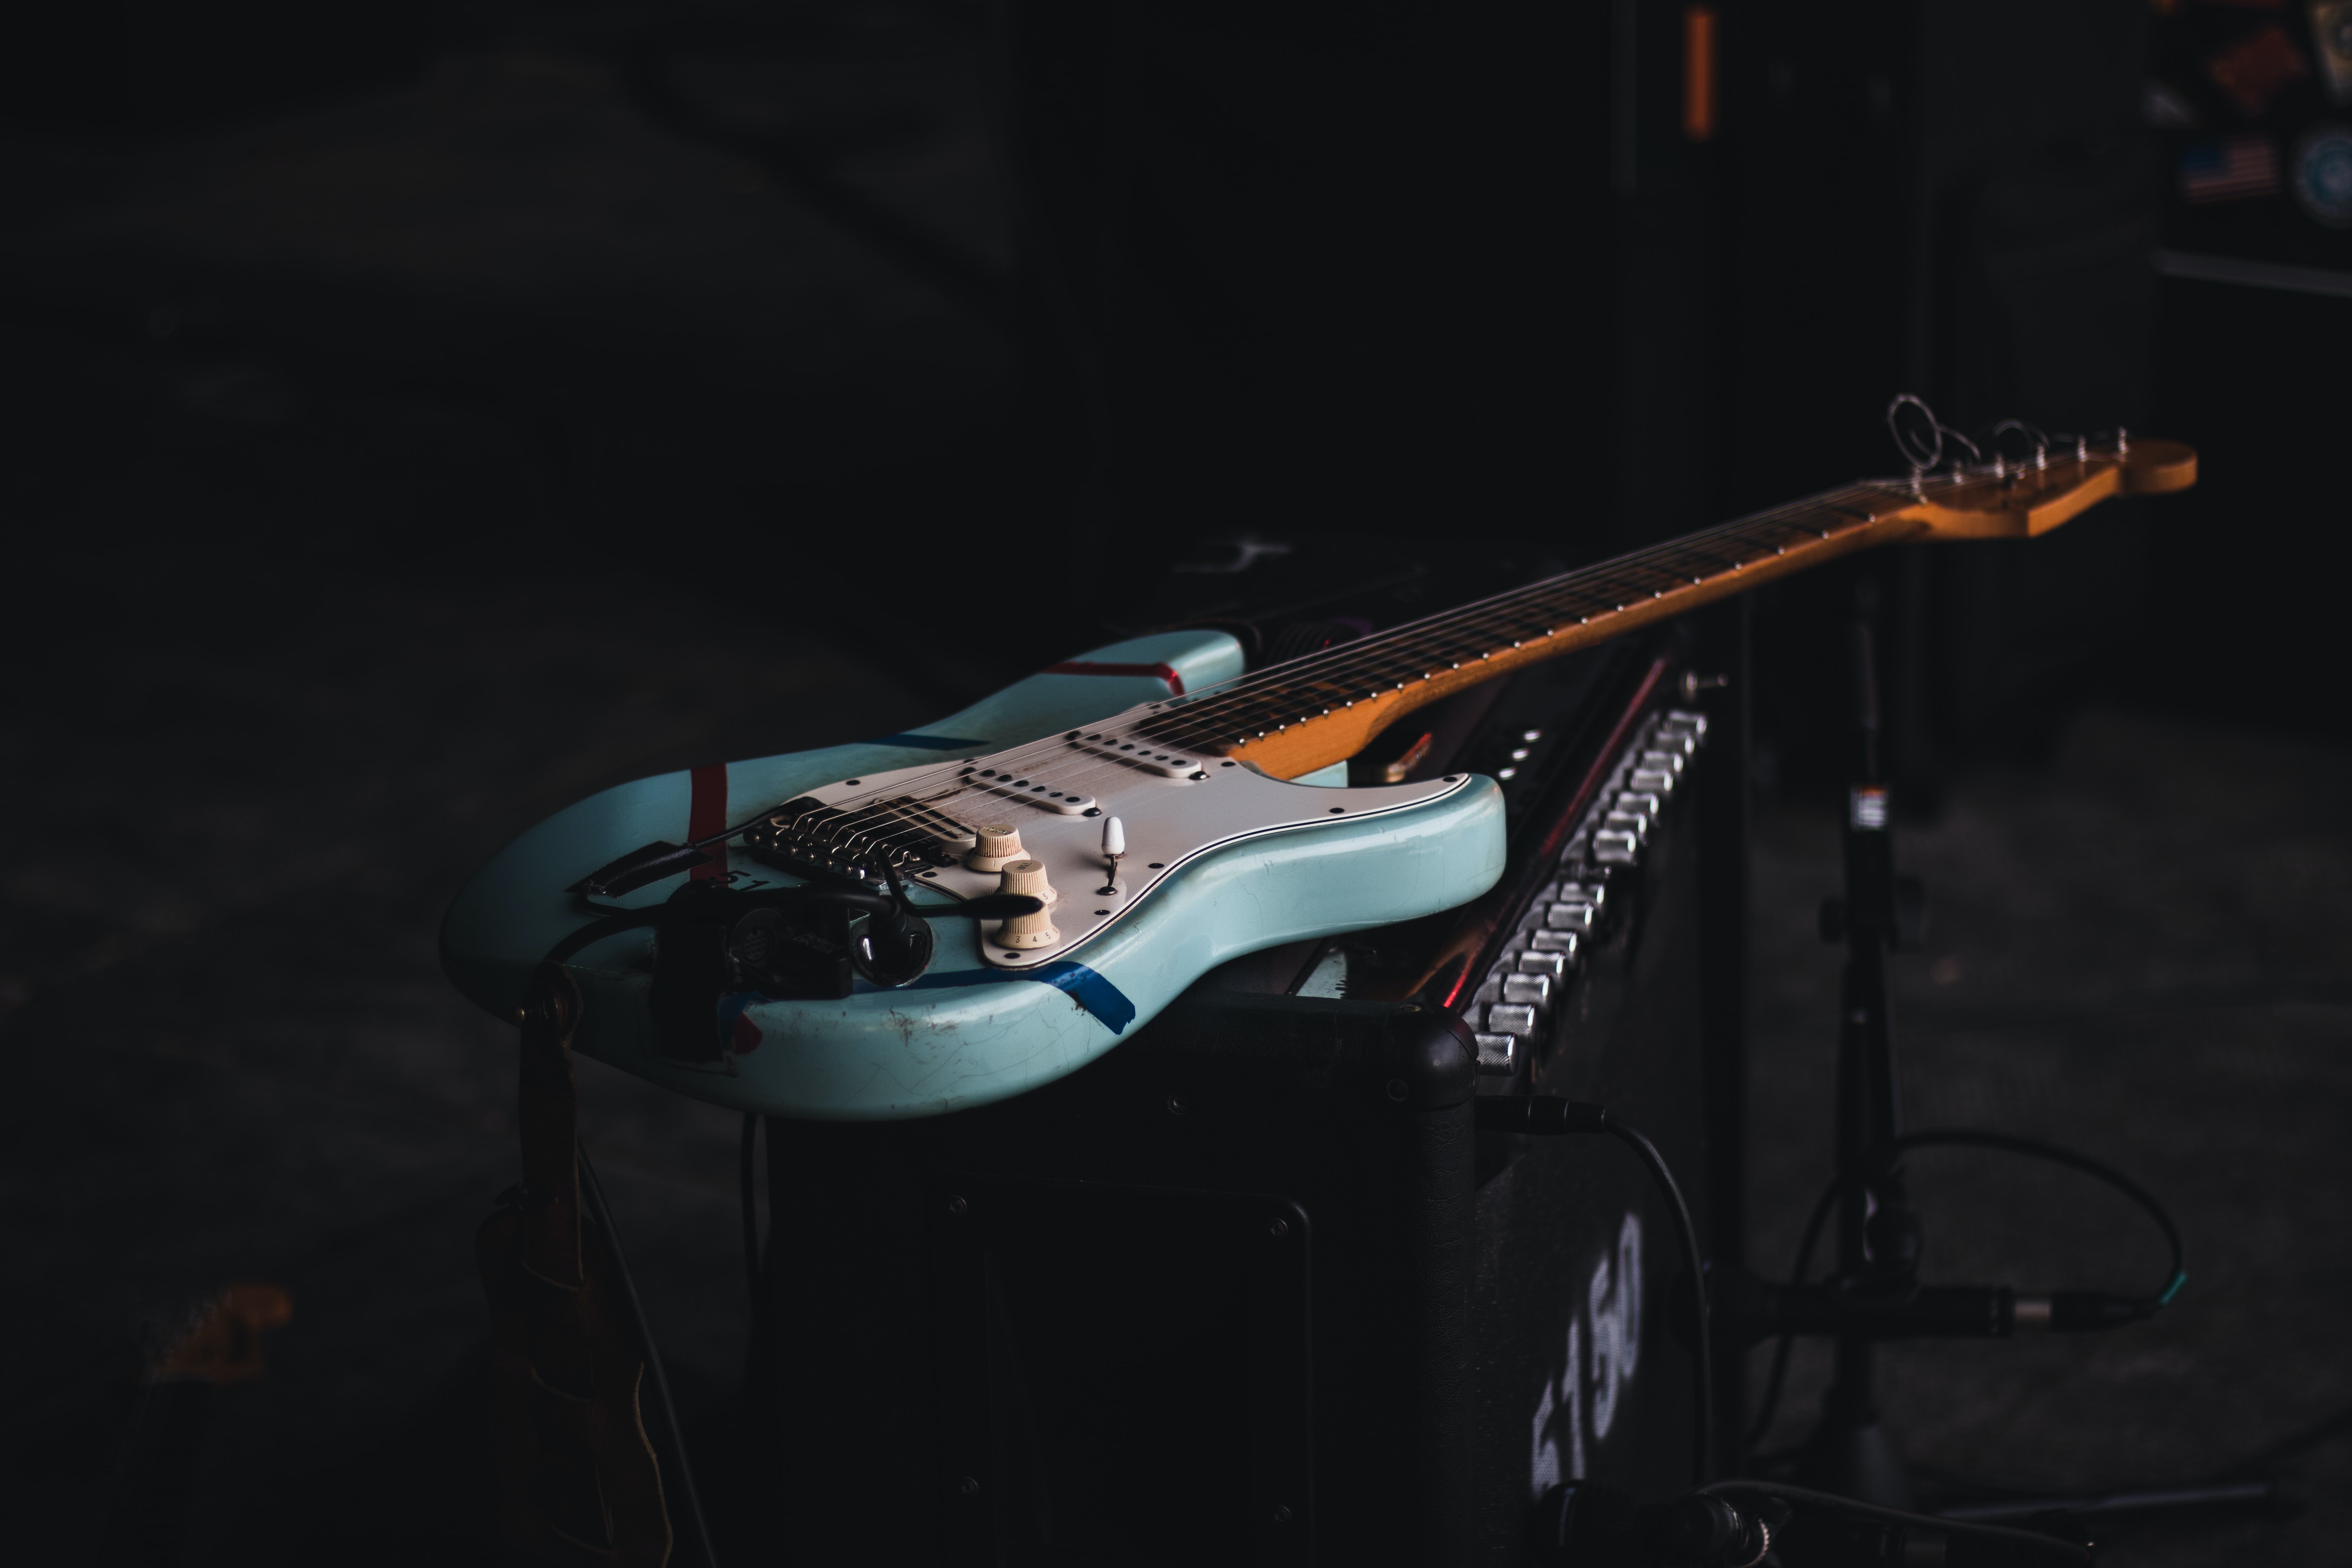 Blue guitar on black amp